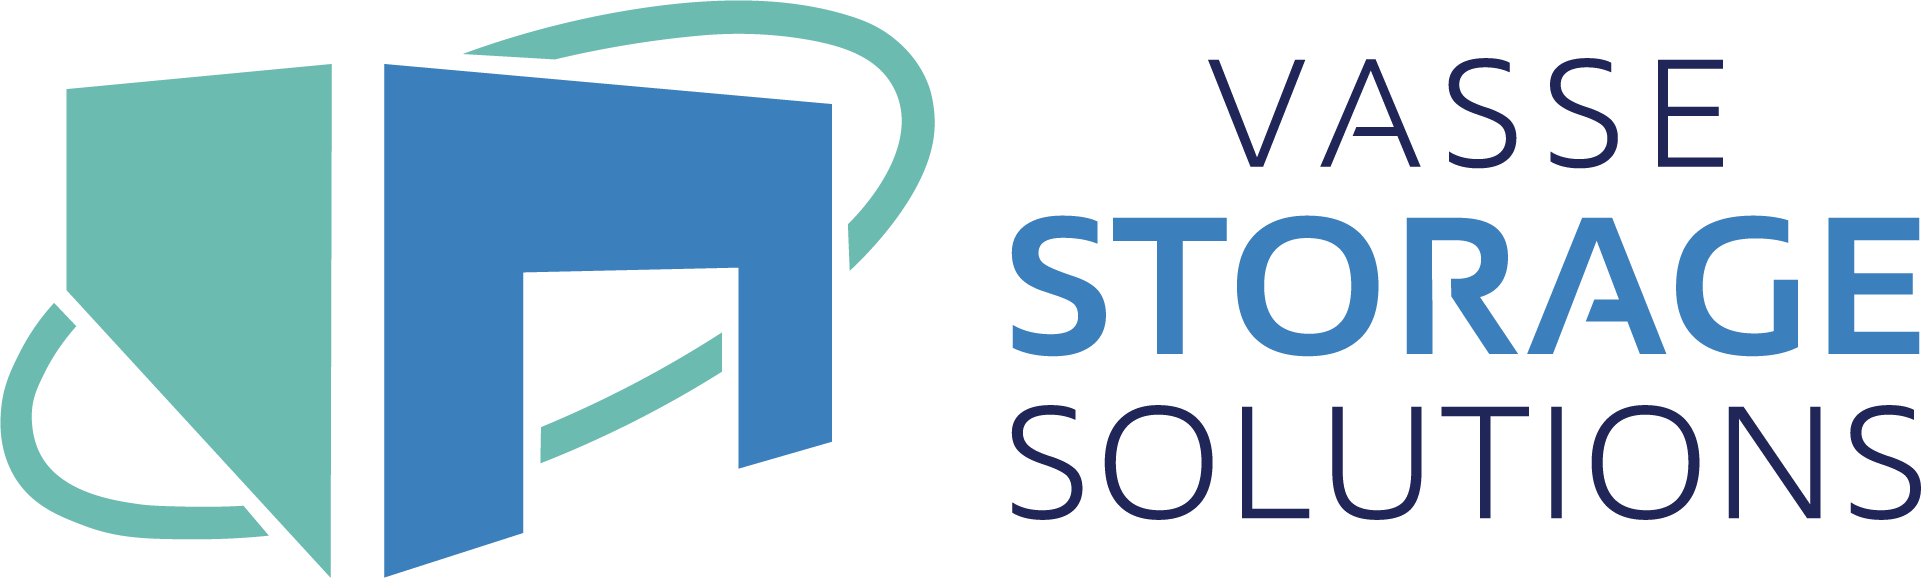 Vasse Storage Solutions